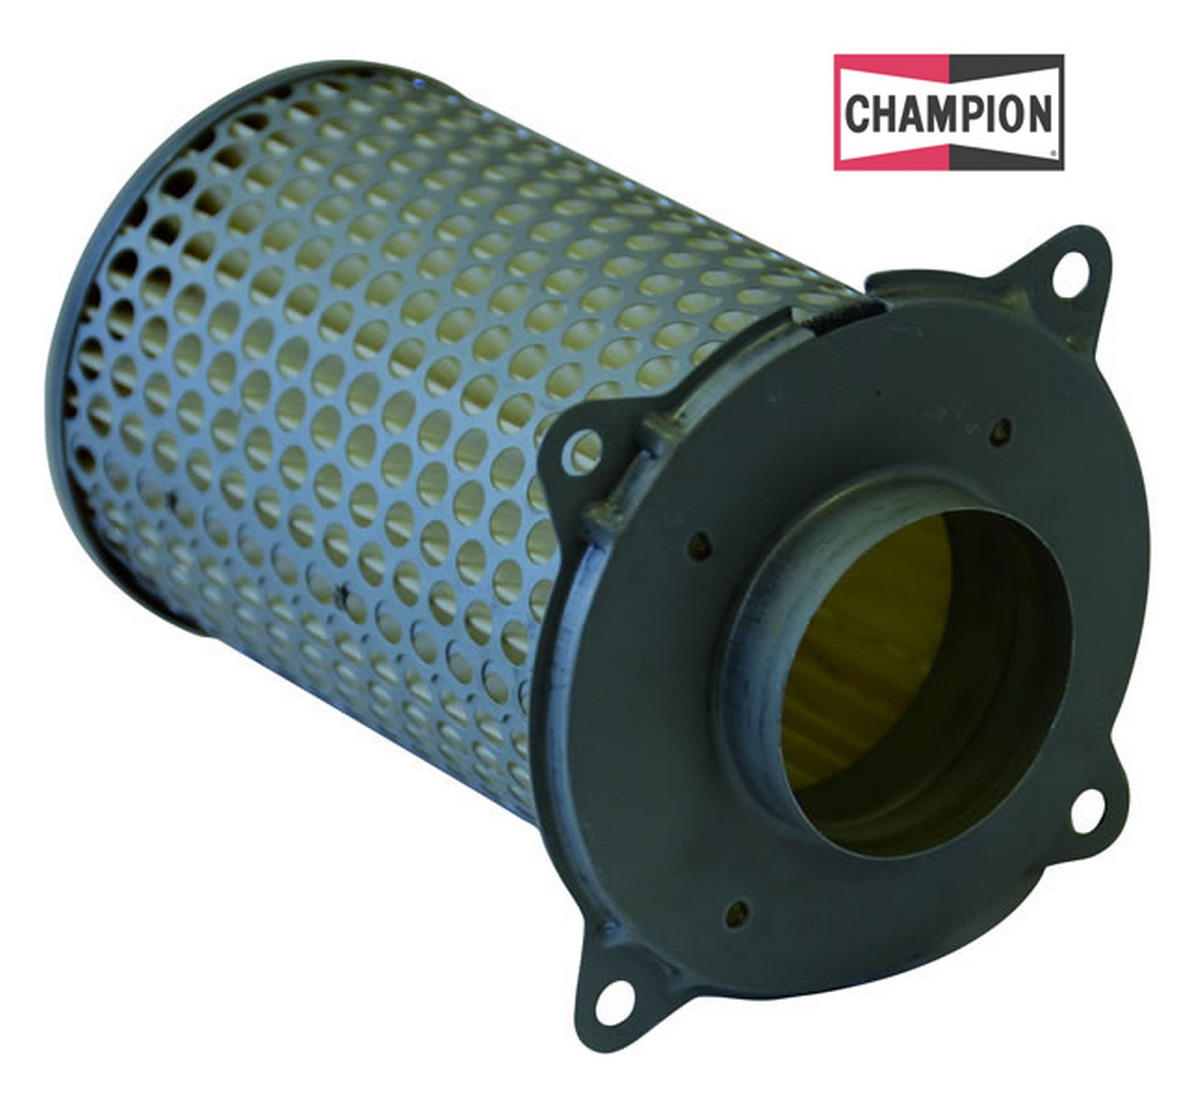 Obrázek produktu Vzduchový filtr CHAMPION J303/301 100604155